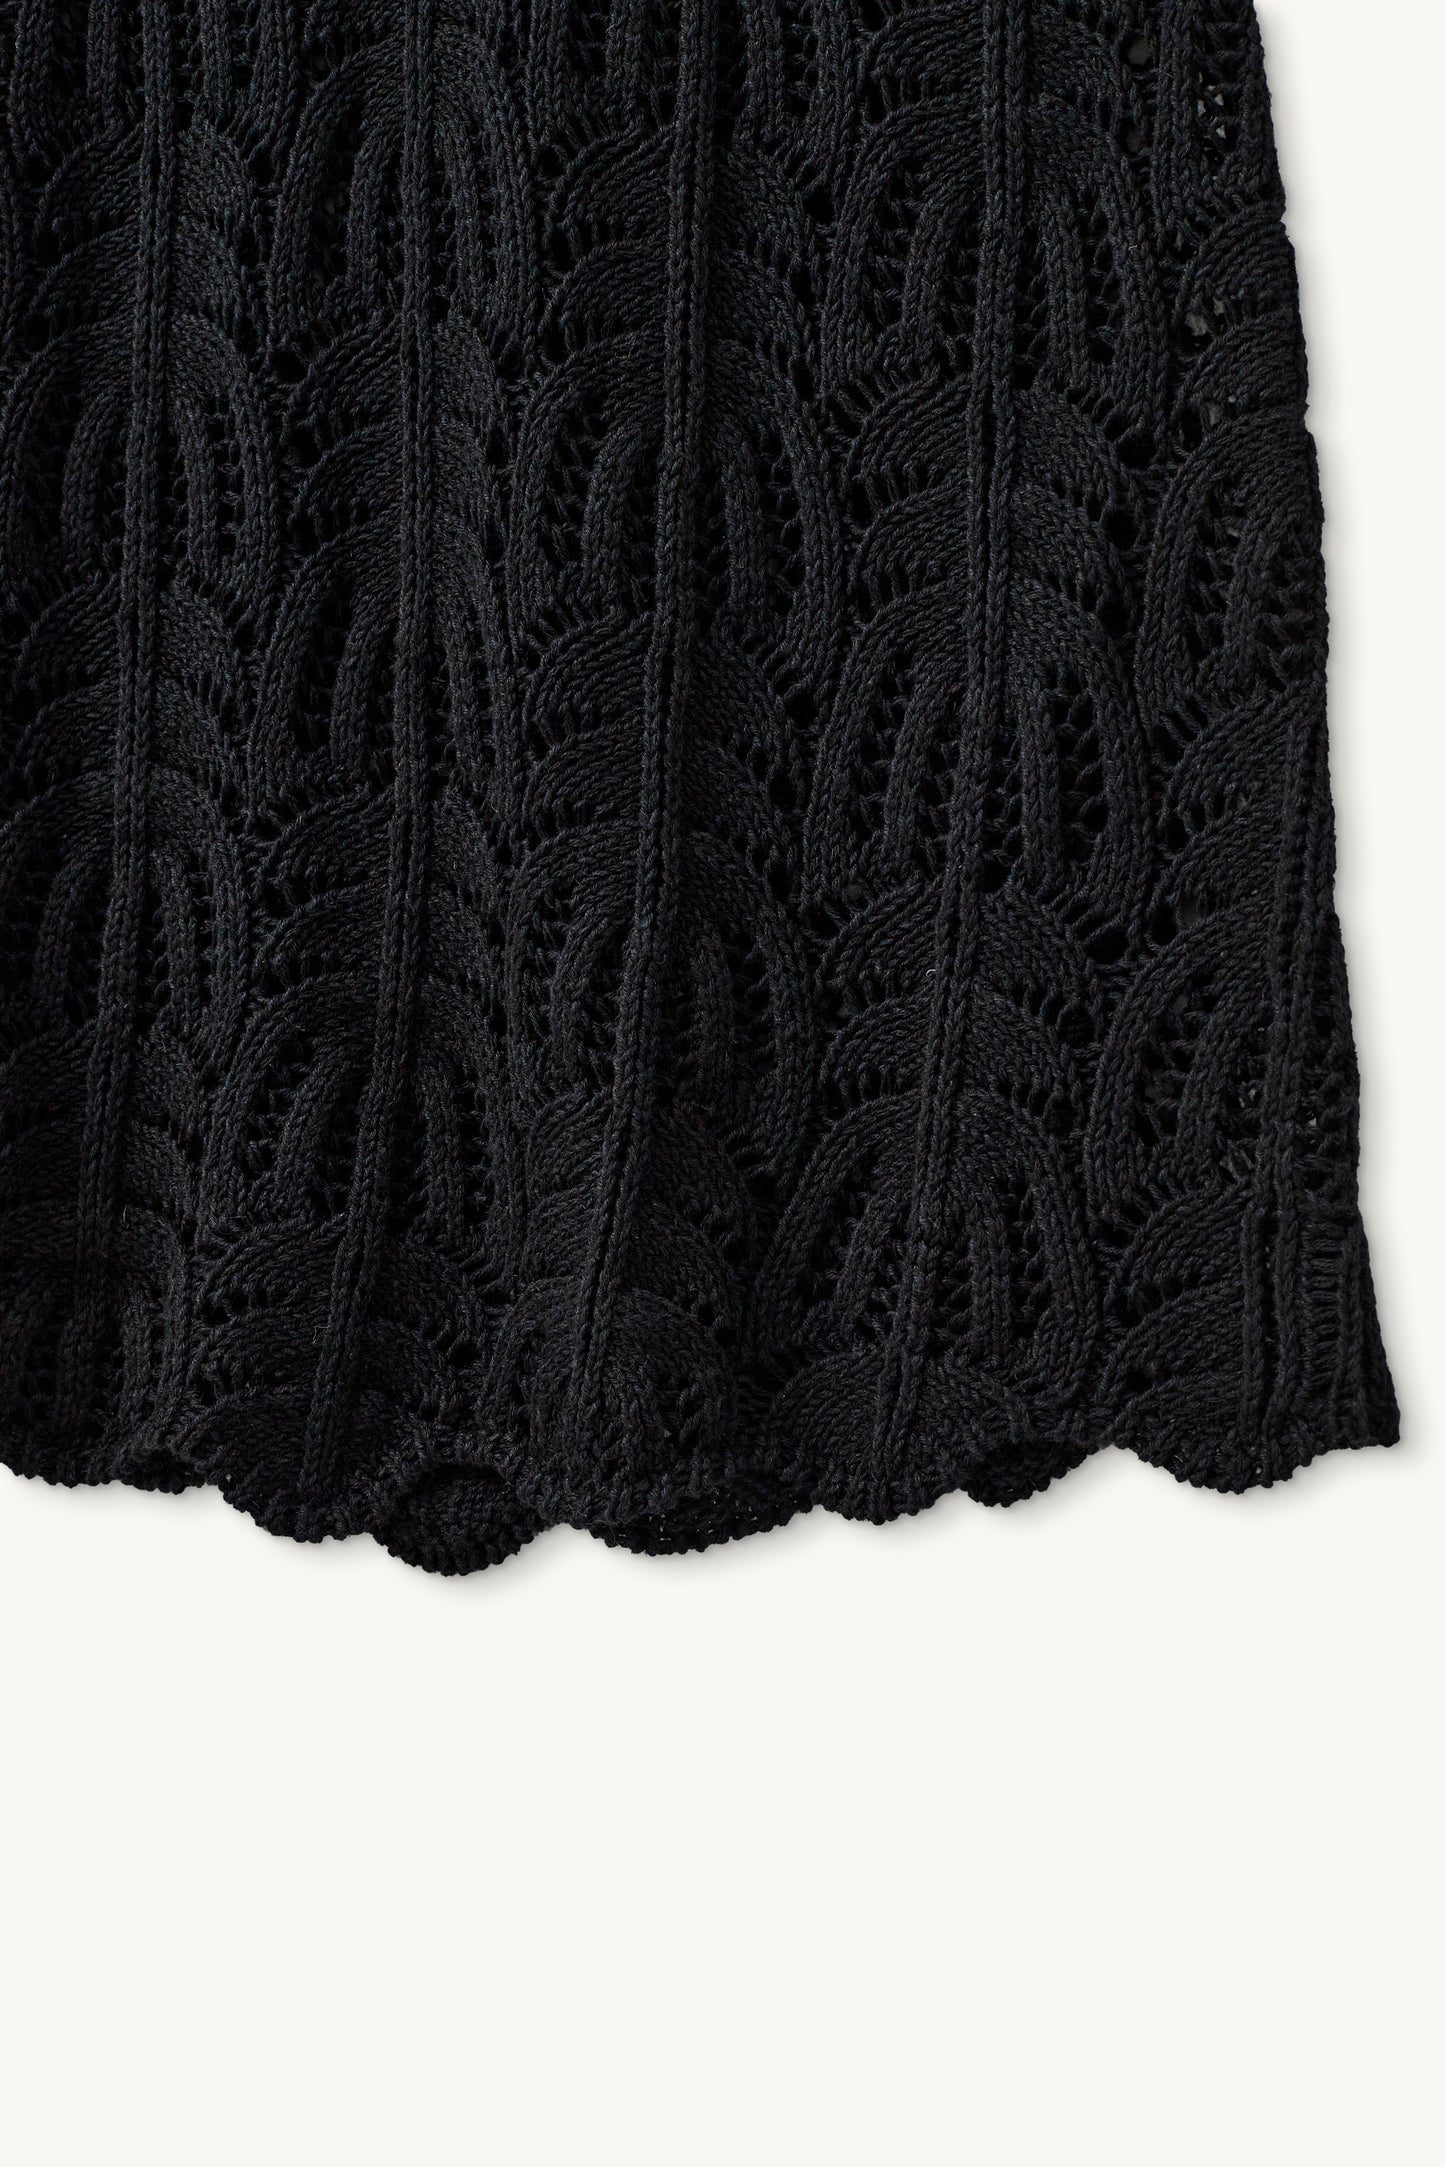 Egypt Crochet Skirt